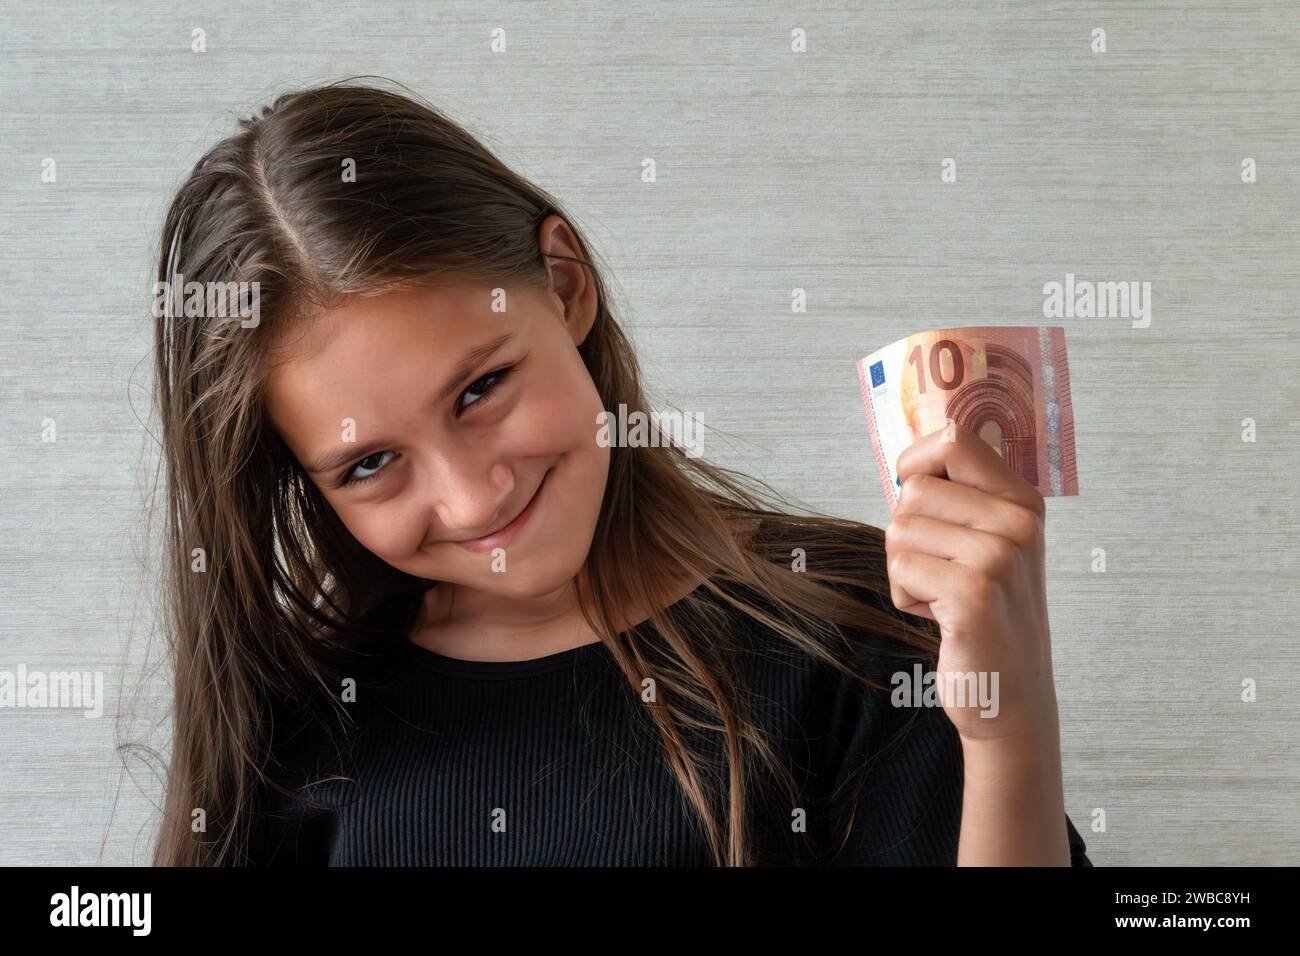 ragazza adolescente sorridente in pullover con dieci banconote da euro su sfondo grigio Foto Stock